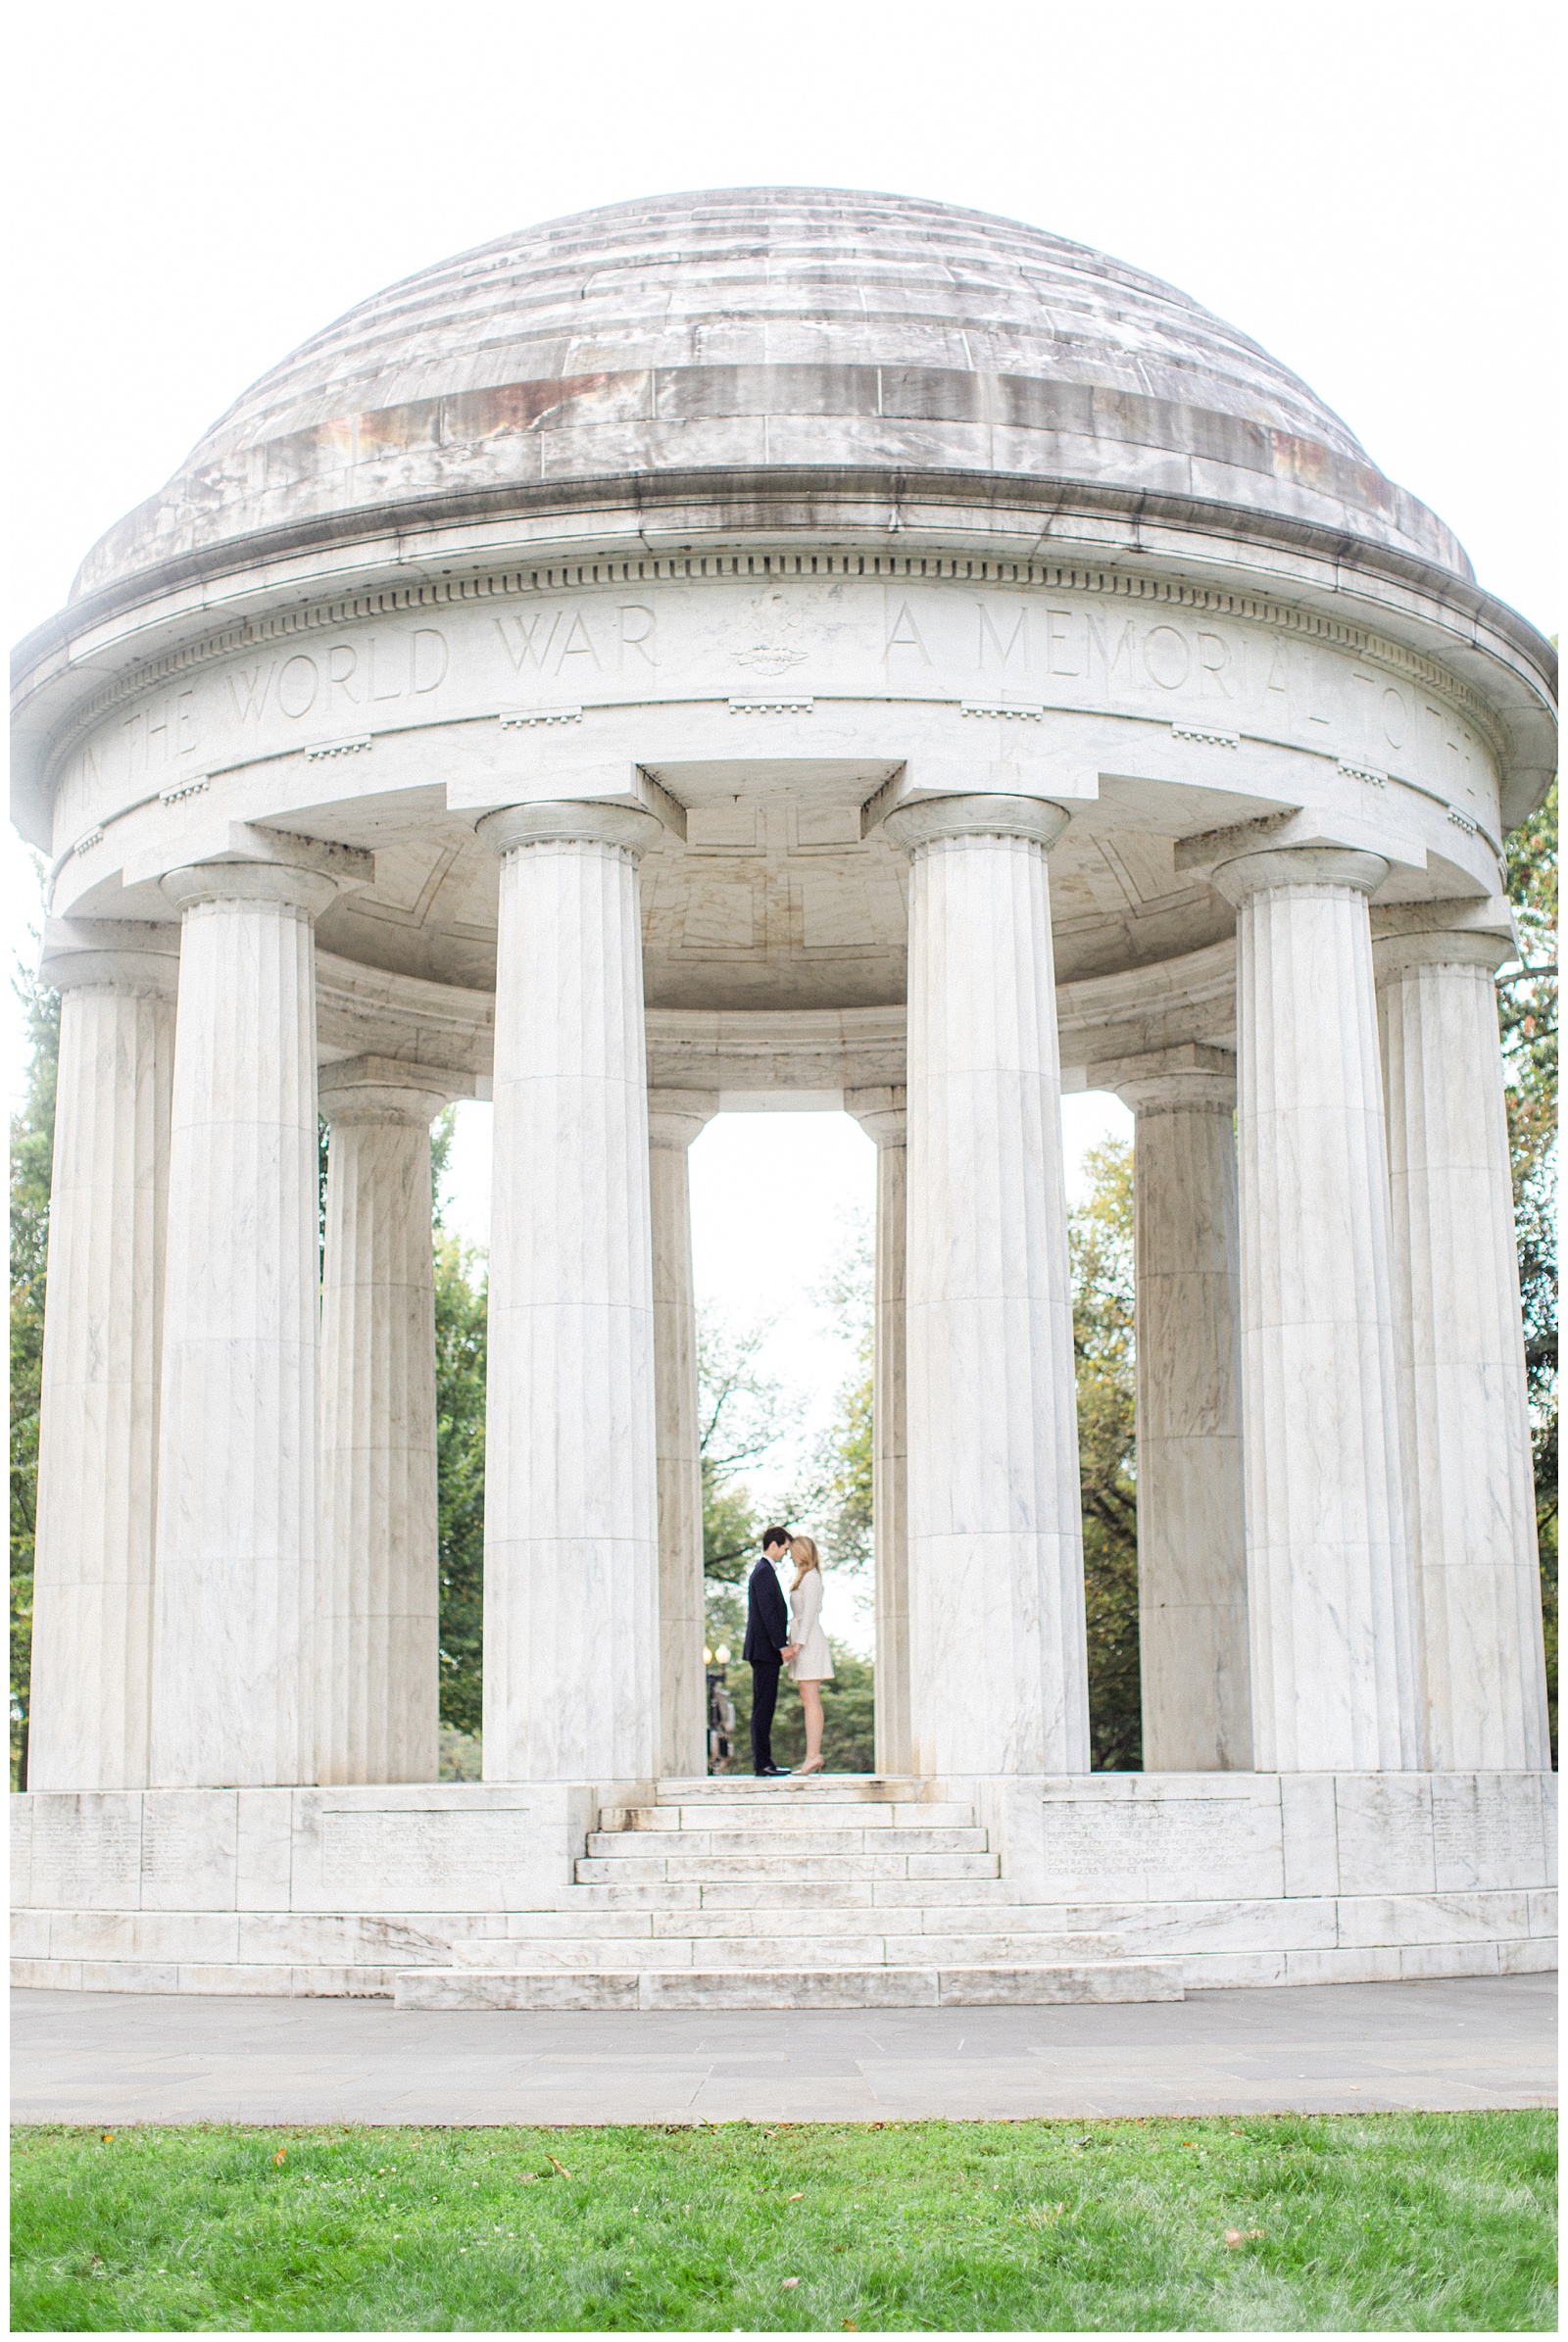 Neva Sullivan Photography_National Mall Engagement Session_Washington DC Wedding Photographer_0010.jpg